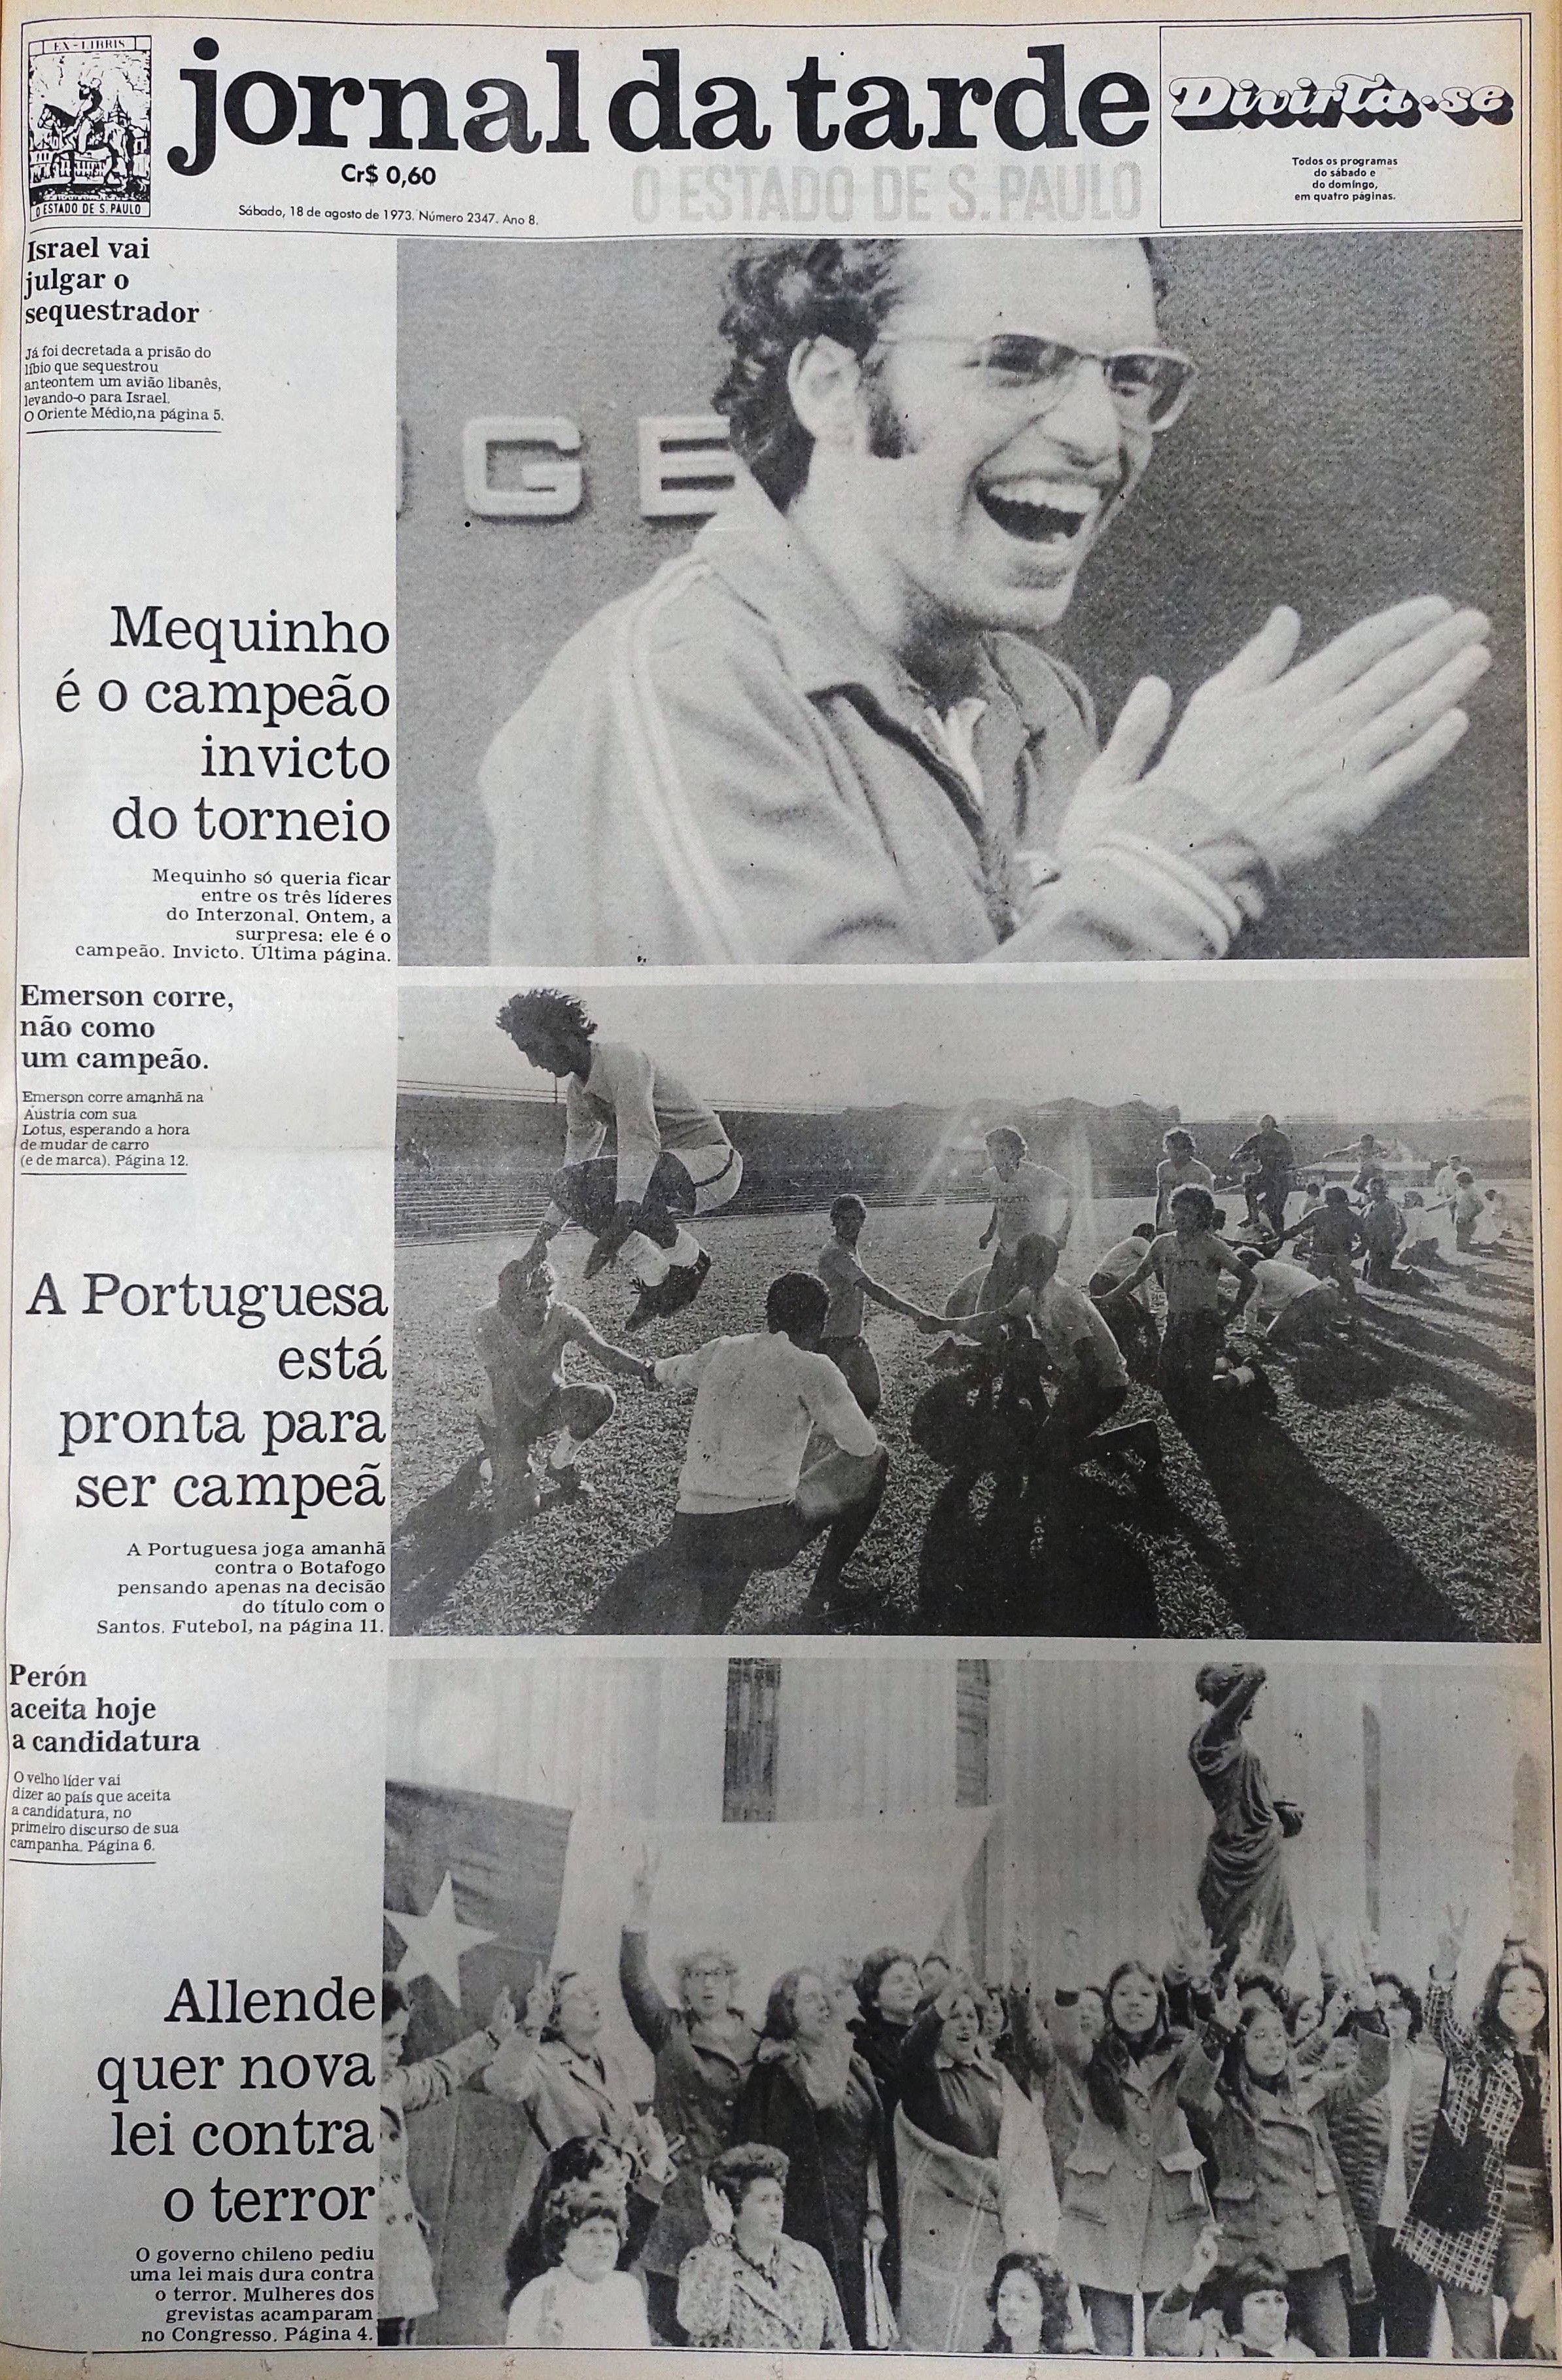 Fotos: Mequinho, maior enxadrista brasileiro - 07/10/2014 - UOL